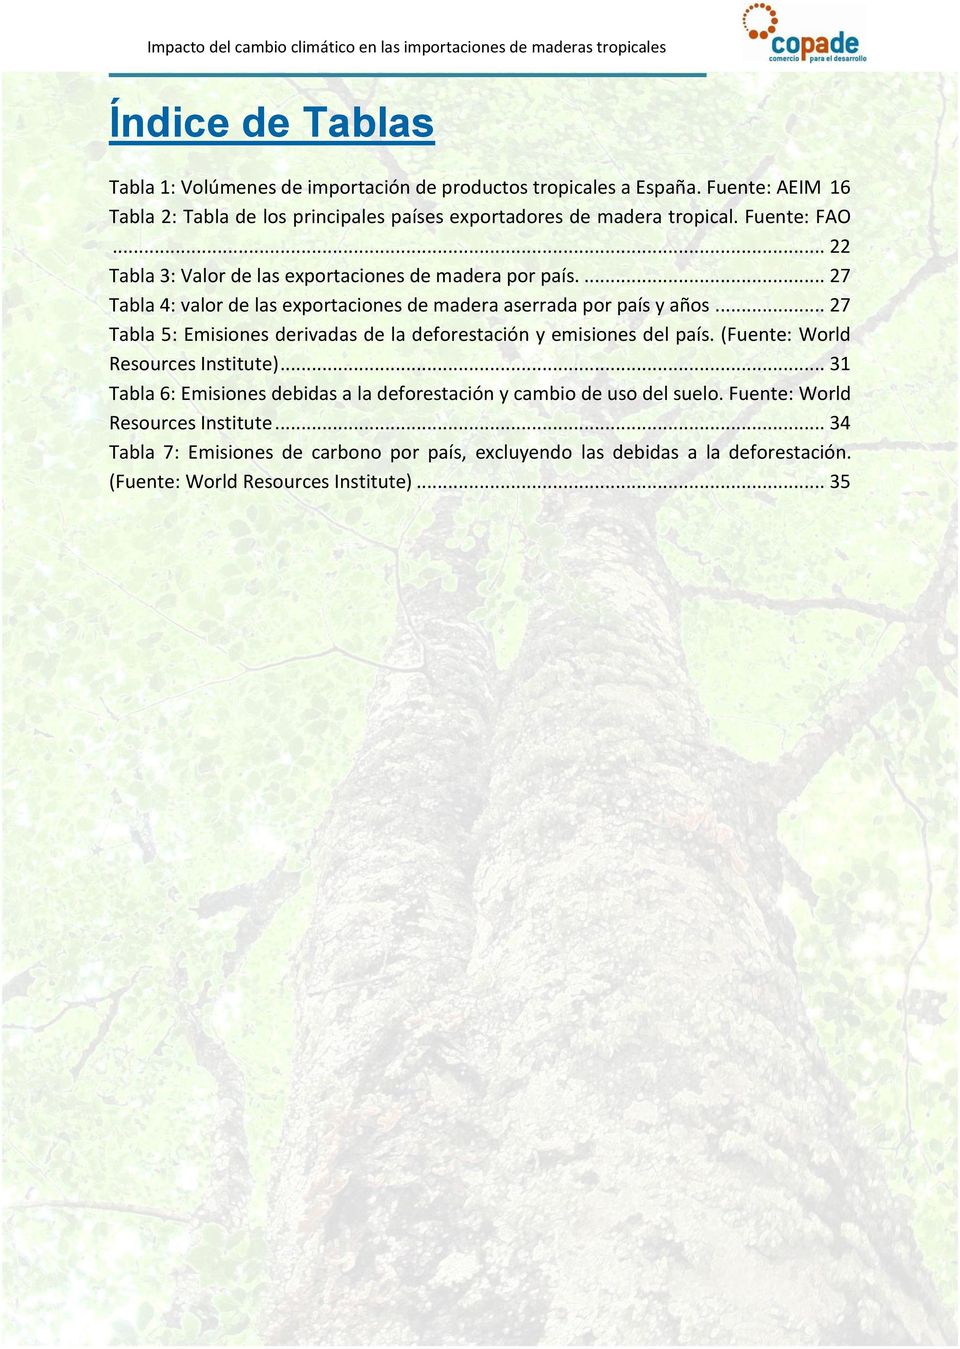 ... 27 Tabla 4: valor de las exportaciones de madera aserrada por país y años... 27 Tabla 5: Emisiones derivadas de la deforestación y emisiones del país.